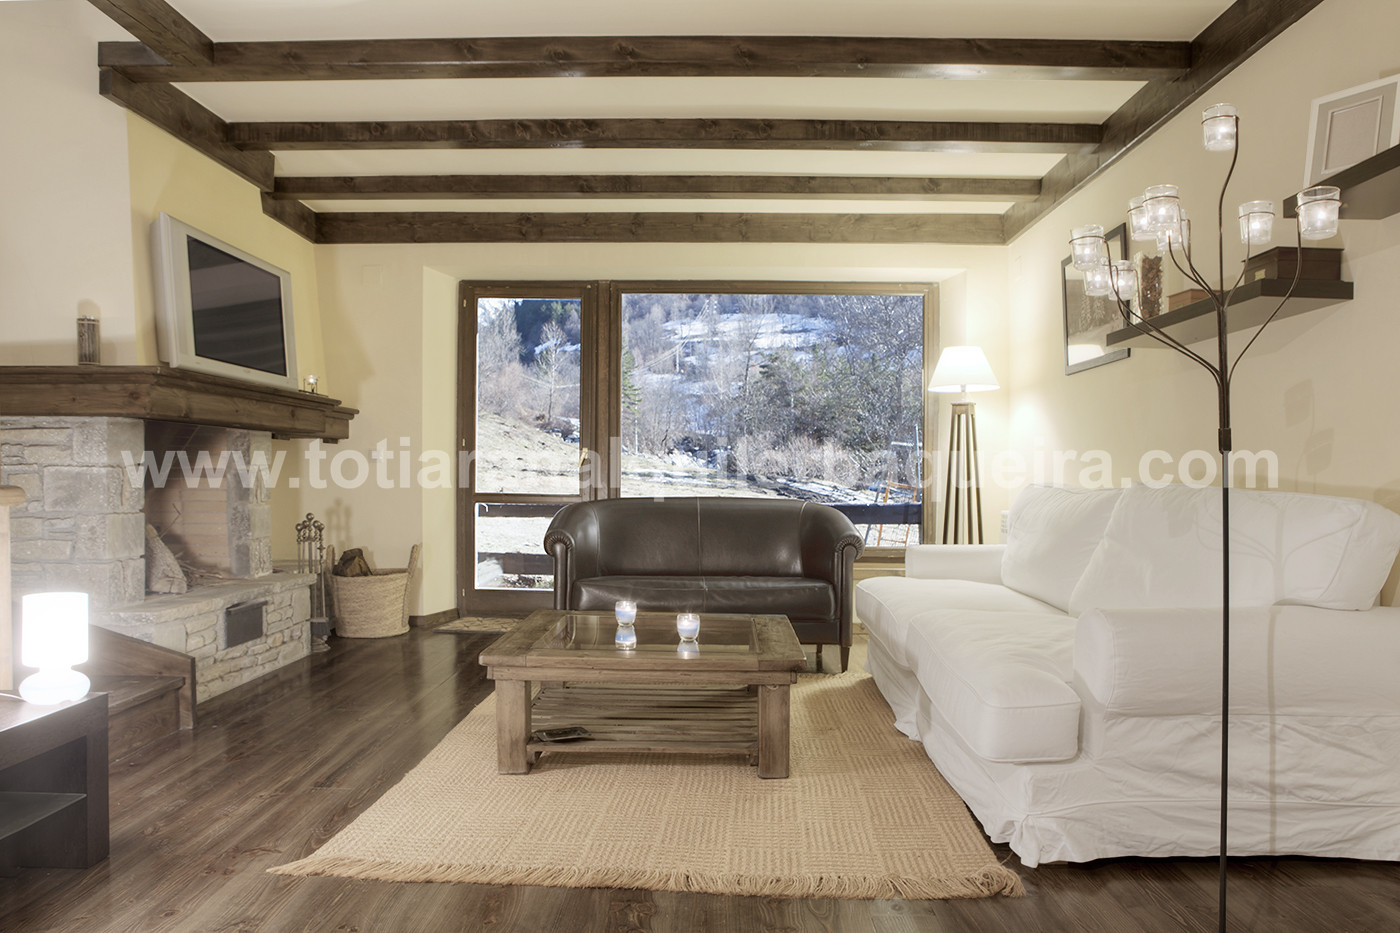 Living room Casa Banhs de Tredòs, Totiaran, house in Tredòs, Val d’Aran